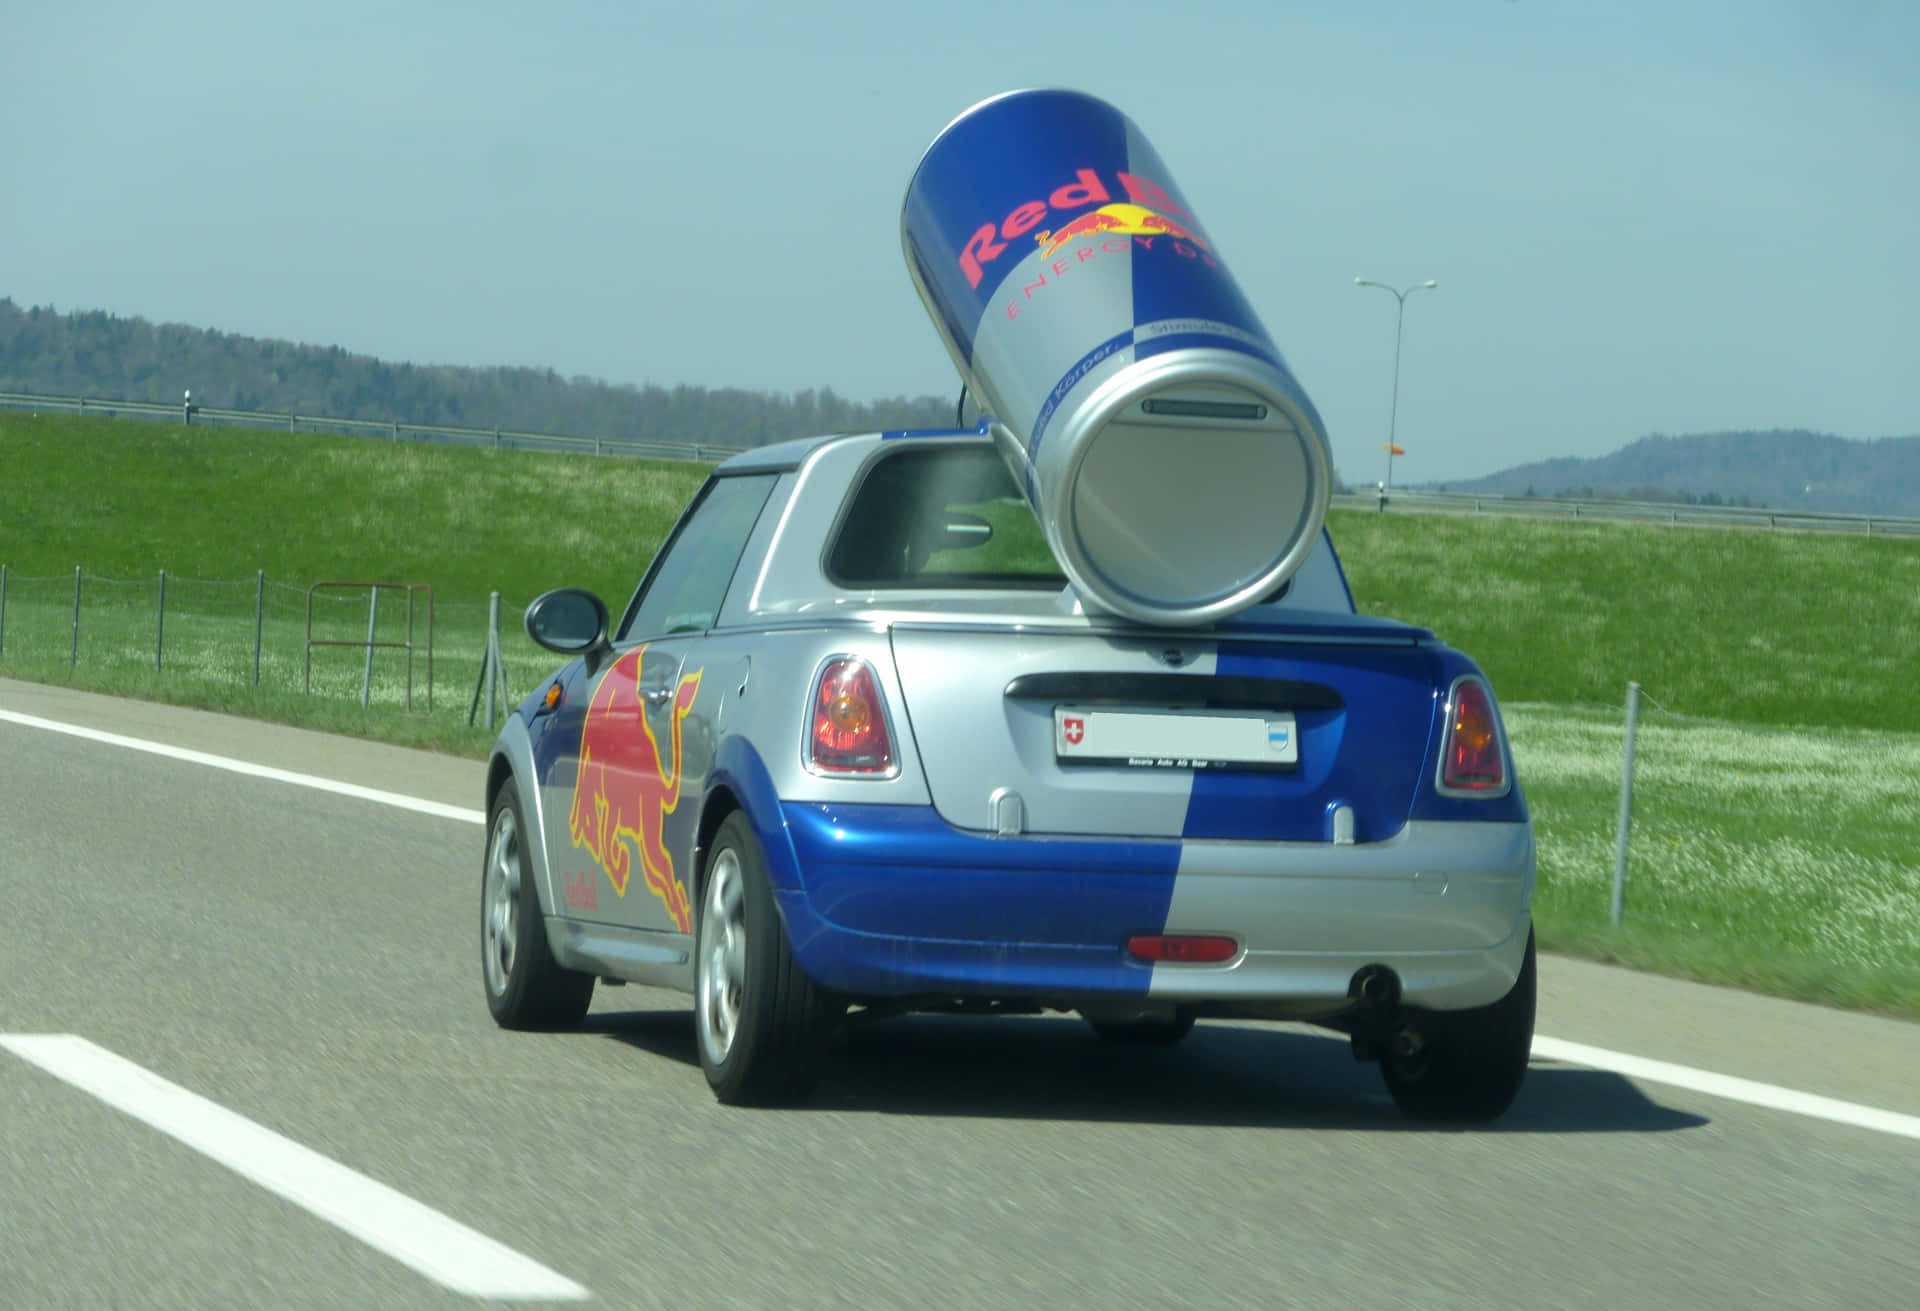 Spüredie Energie Von Red Bull, Egal Wo Du Hingehst!